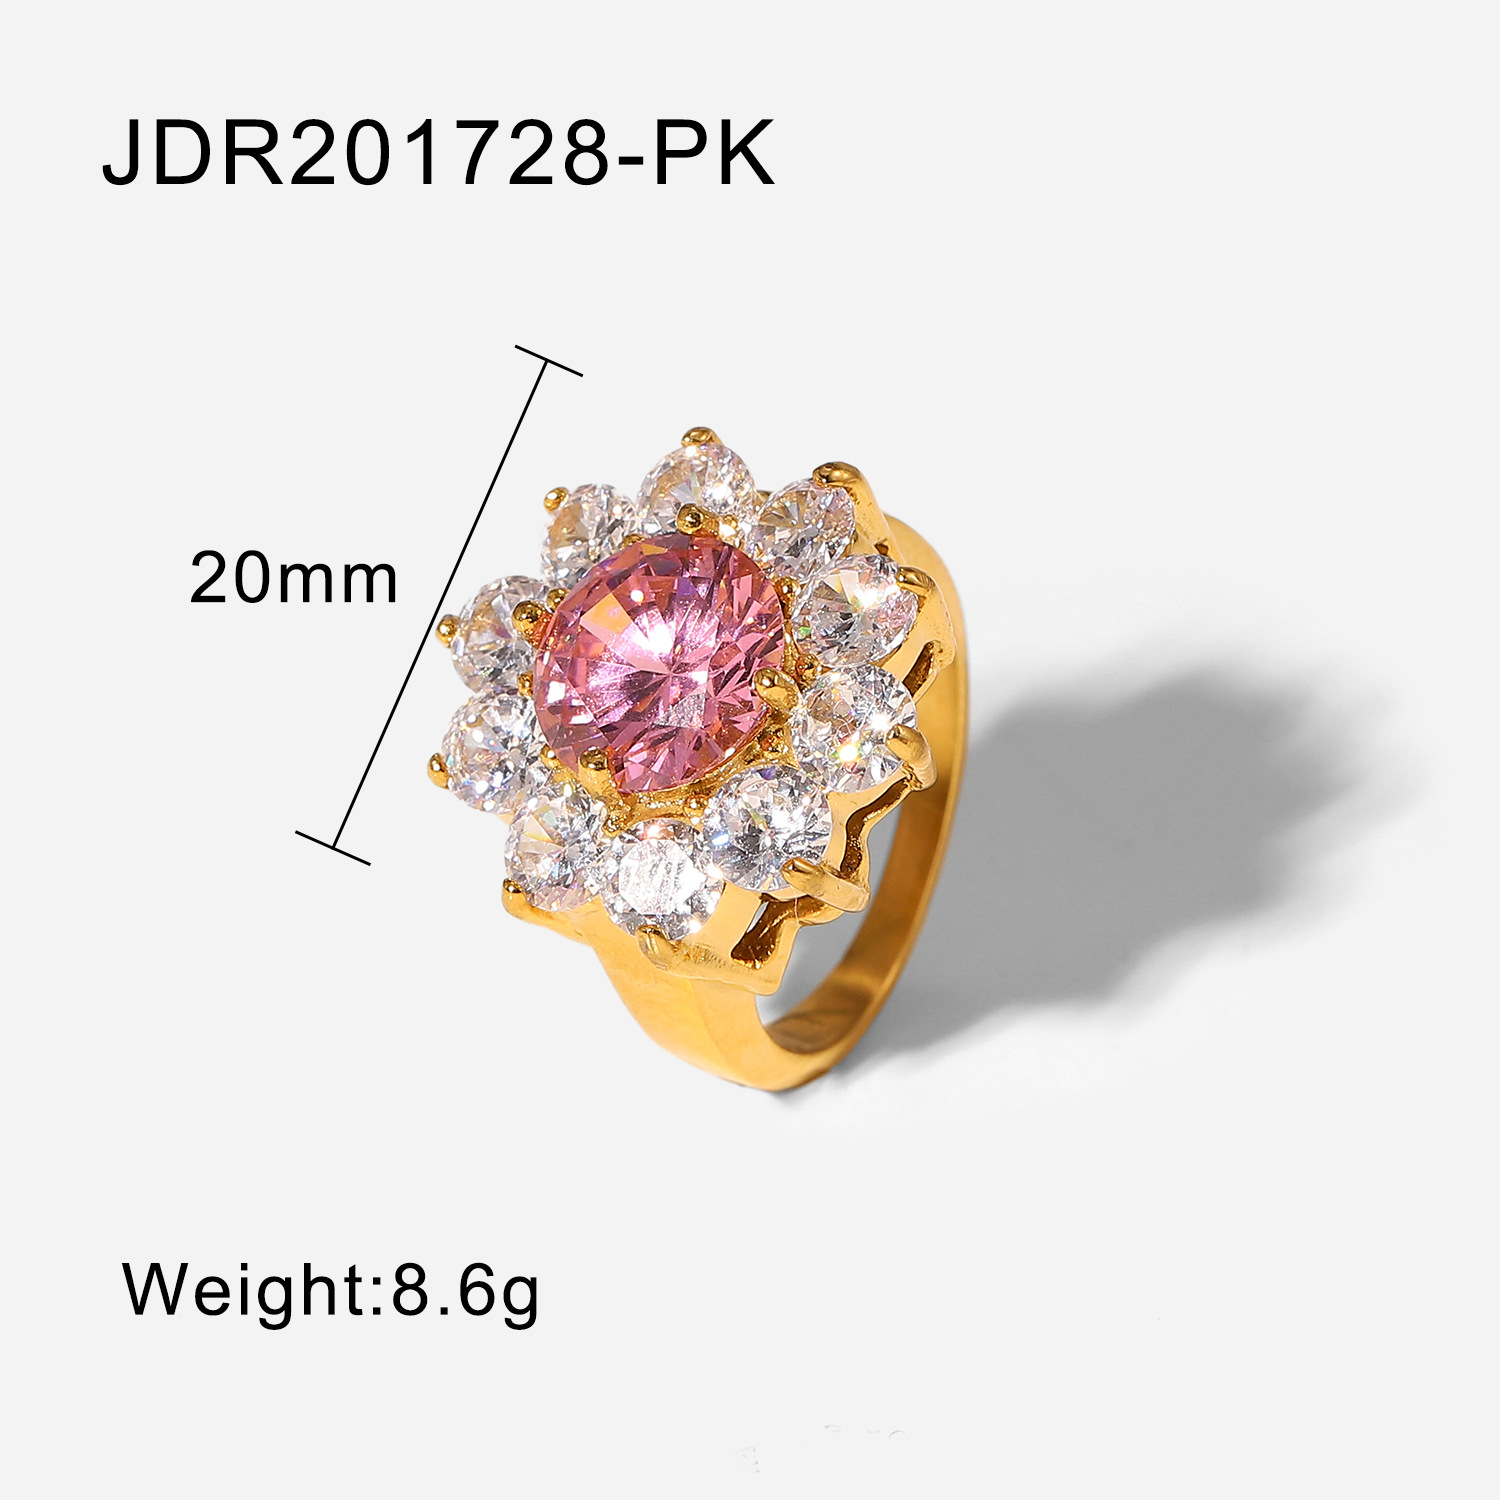 JDR201728-PK 8